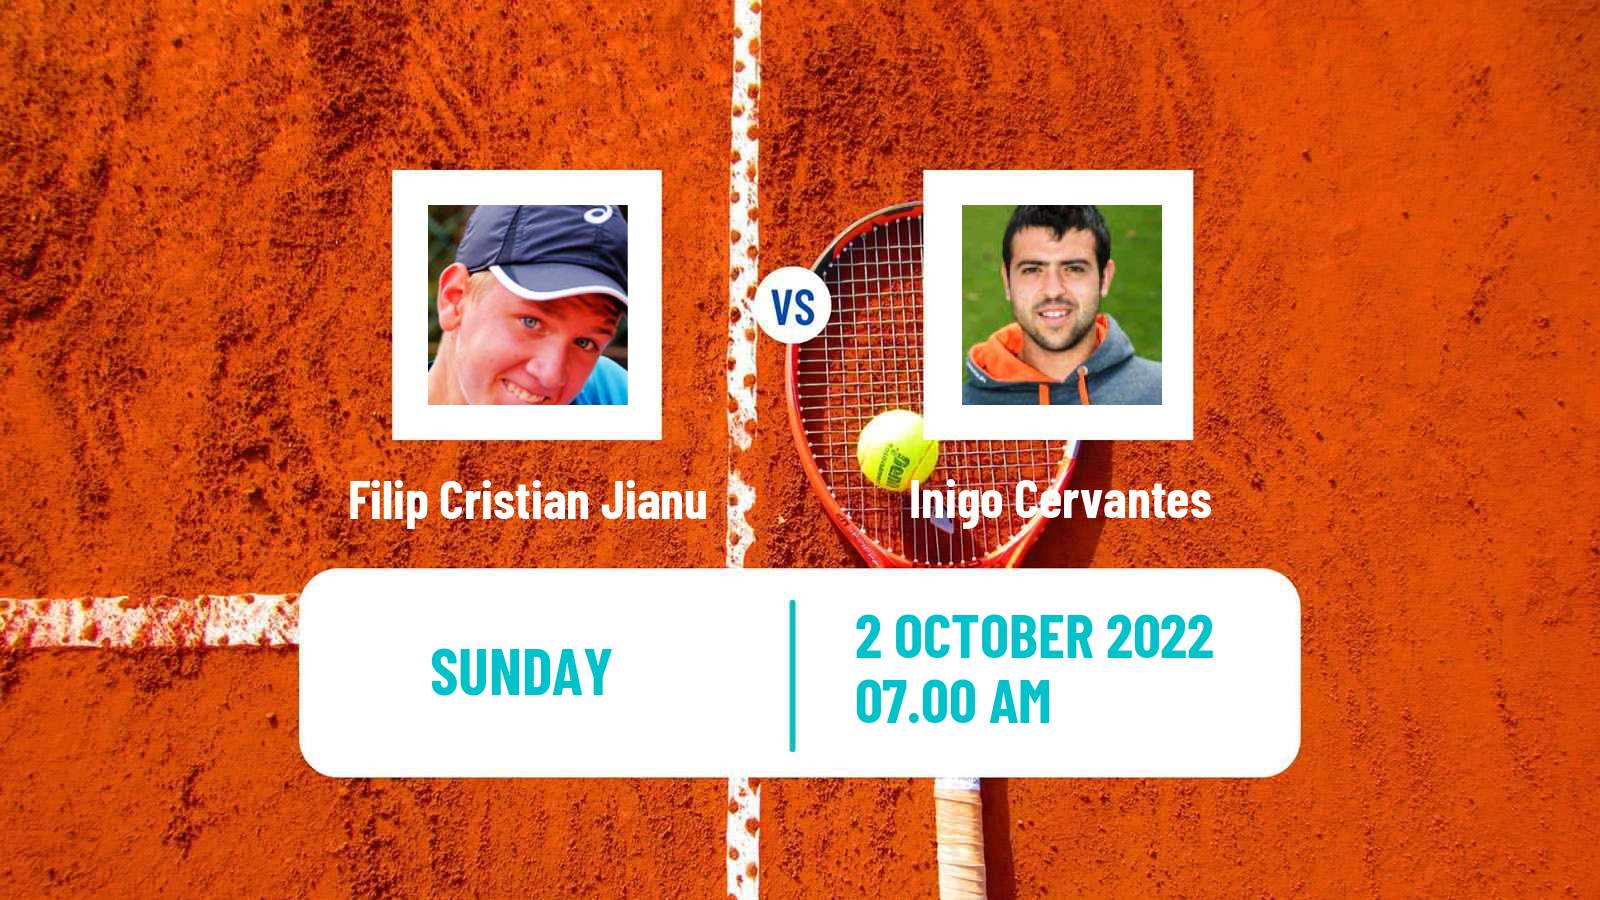 Tennis ATP Challenger Filip Cristian Jianu - Inigo Cervantes